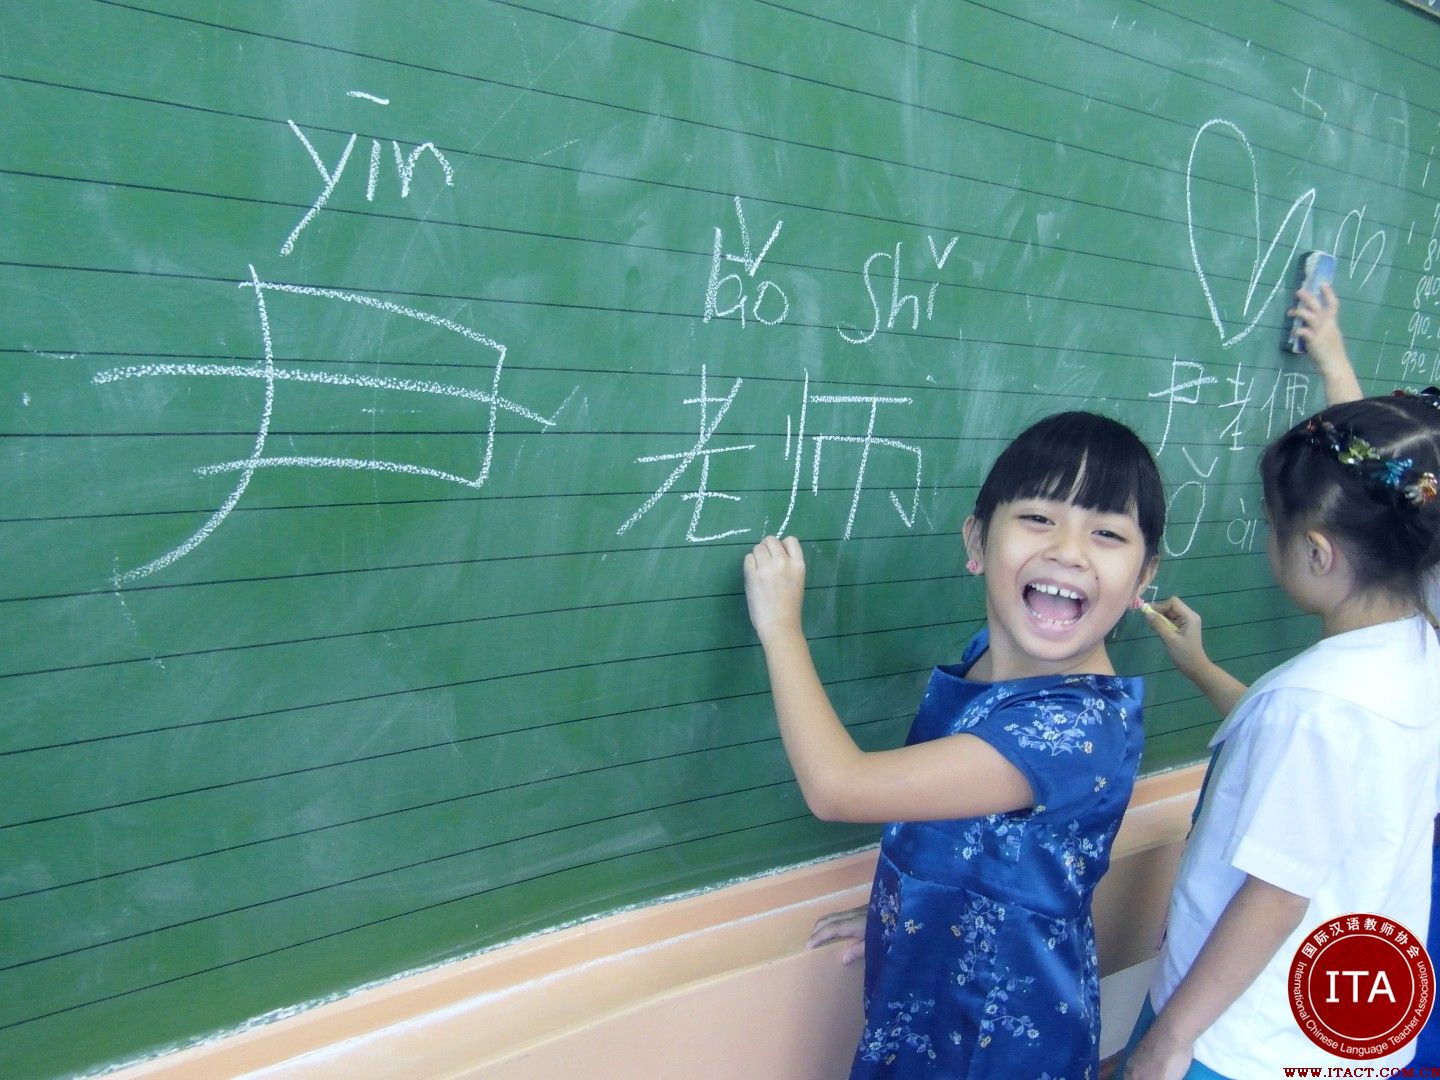 ITA国际汉语教师在海外教学缩影